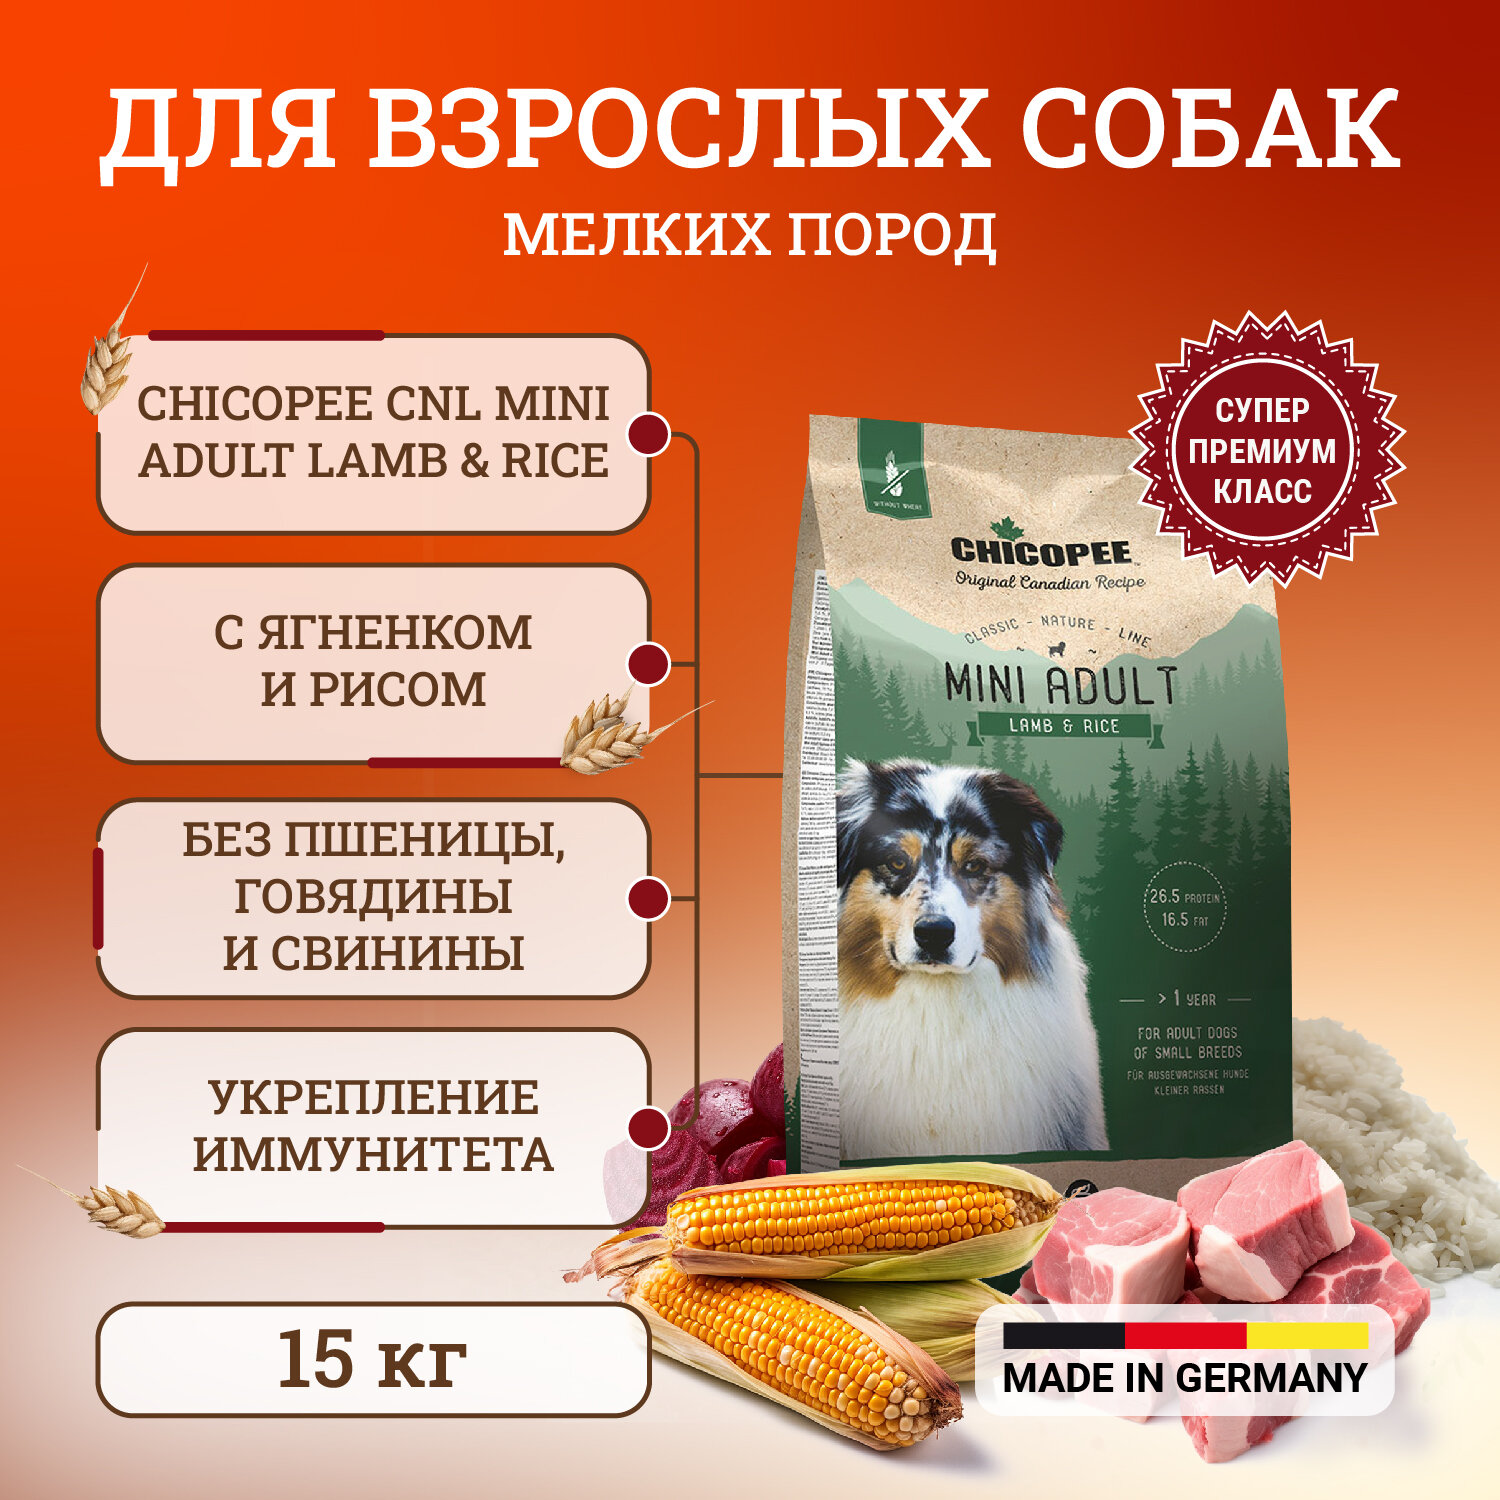 Chicopee CNL Mini Adult Lamb & Rice сухой корм для взрослых собак мелких пород с ягненком и рисом 15кг